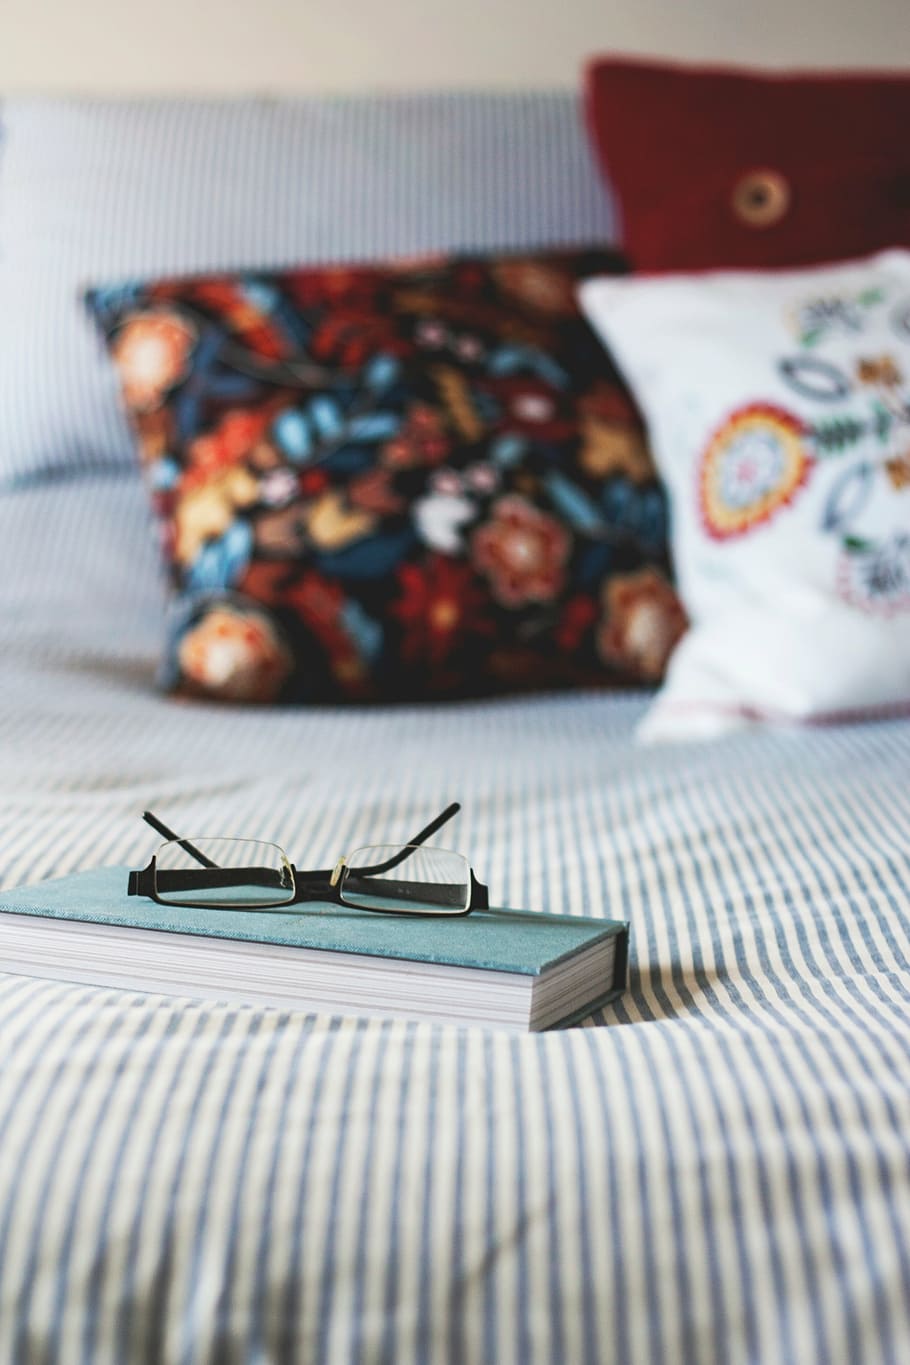 kacamata pada buku, hitam, bingkai, kacamata, biru, keras, terikat, buku, kamar tidur, tempat tidur